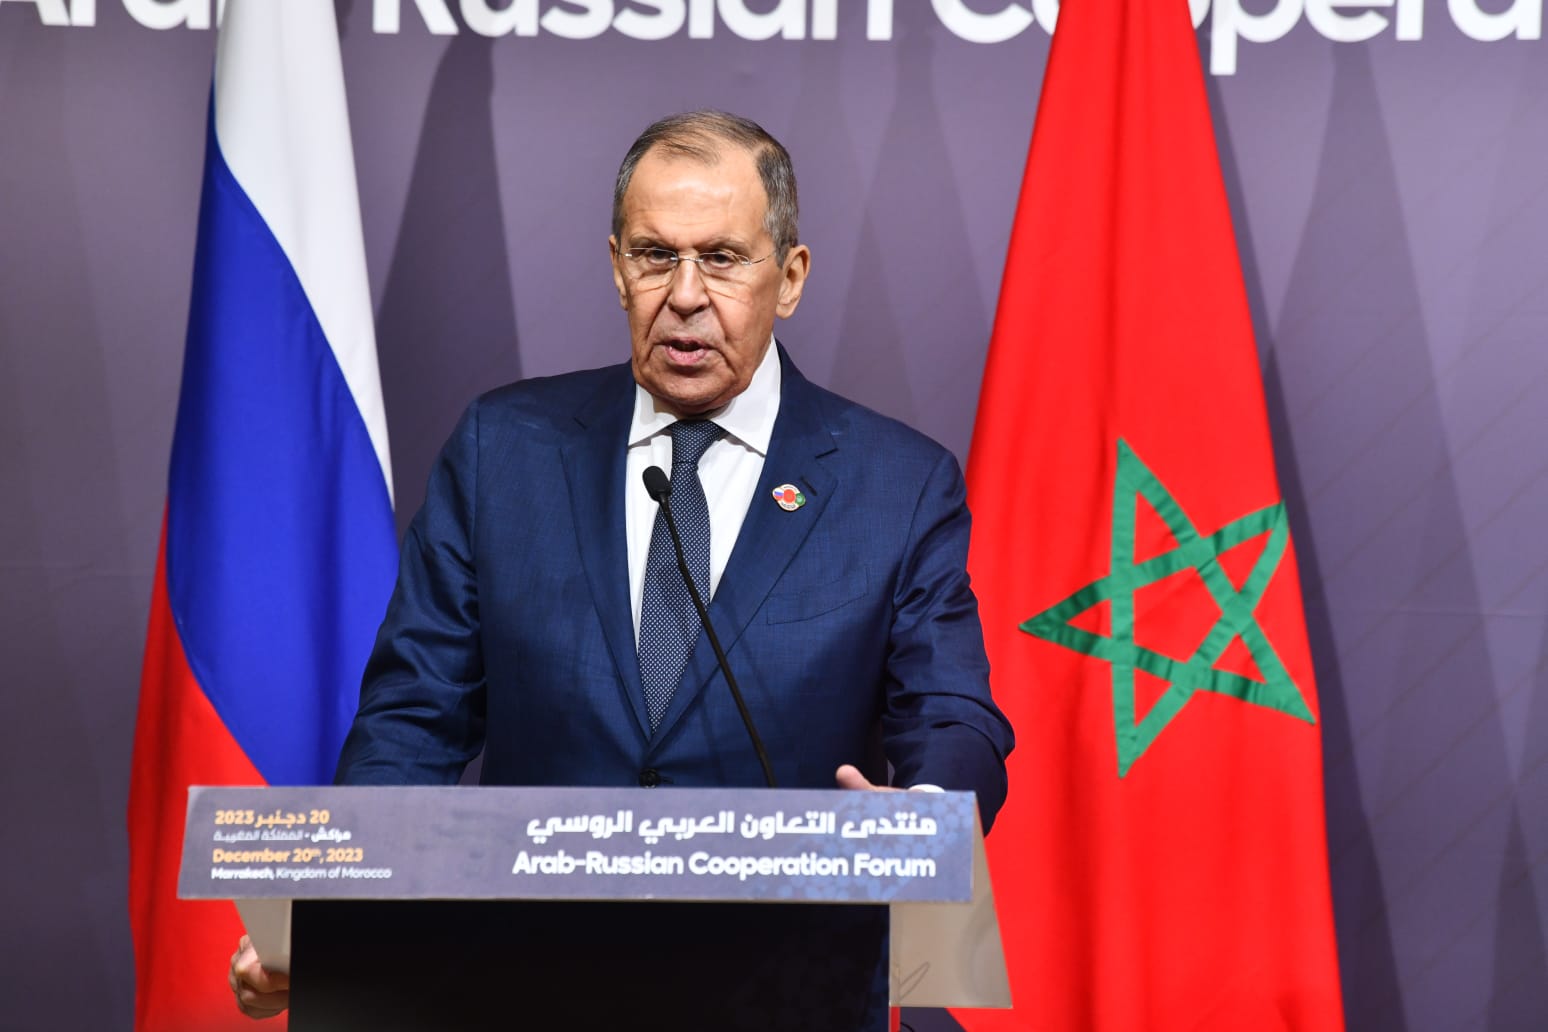 الصحراء المغربية.. لافروف: روسيا تدعم تسوية مستدامة على أساس قرارات مجلس الأمن